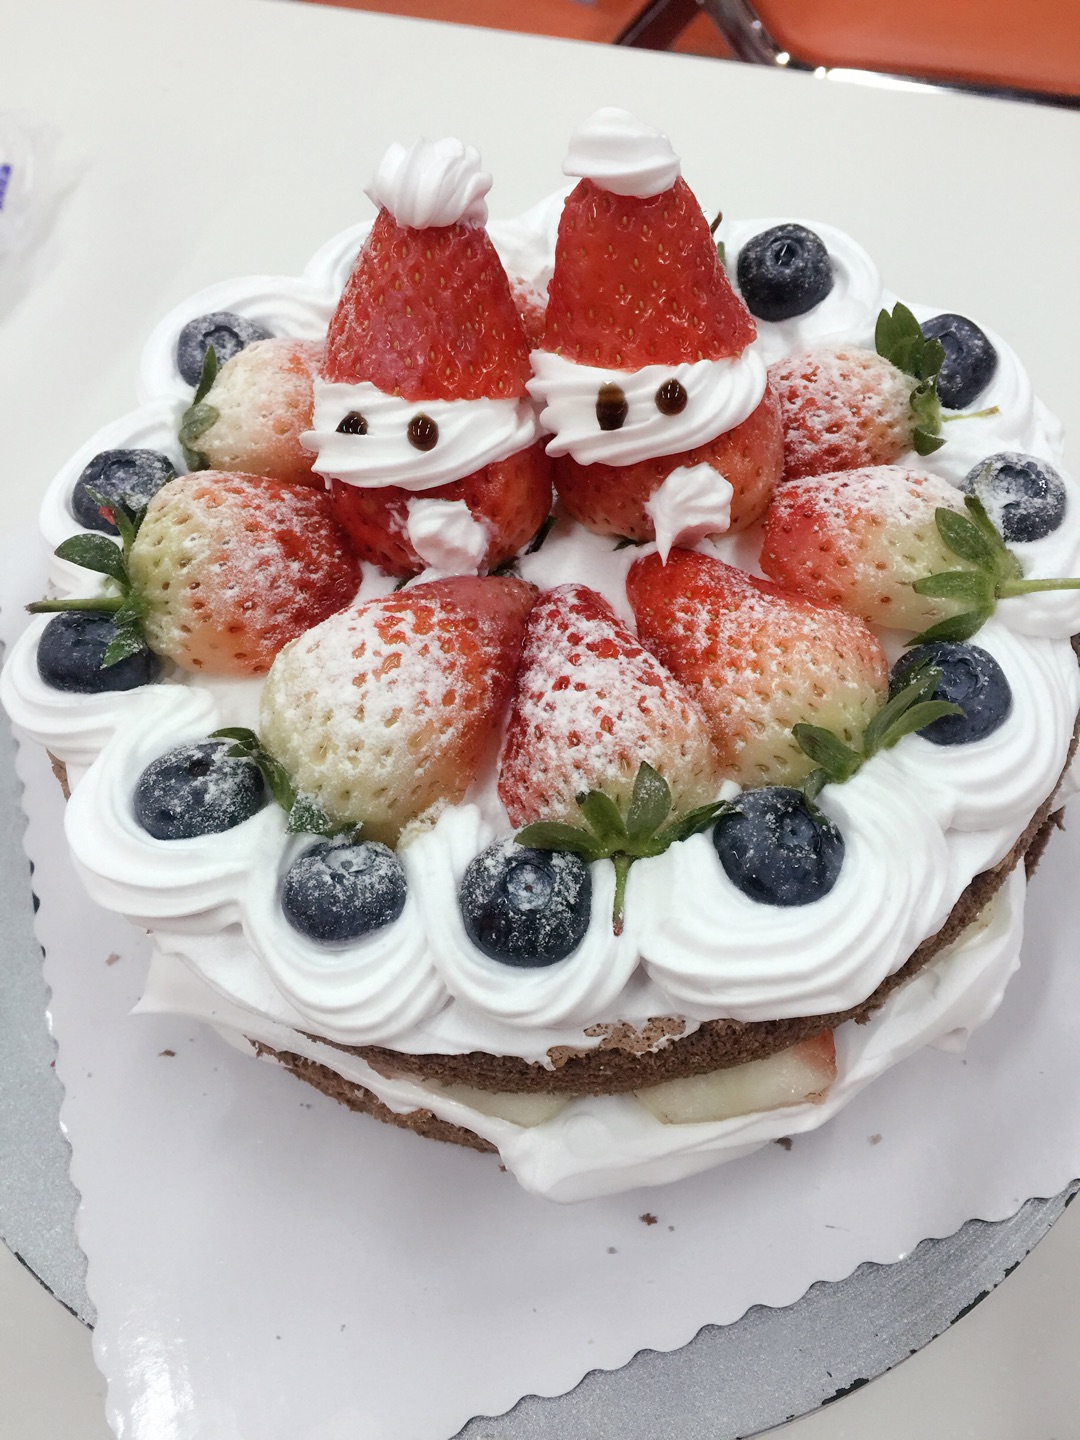 【随拍】草莓蛋糕 - Powered by Discuz!